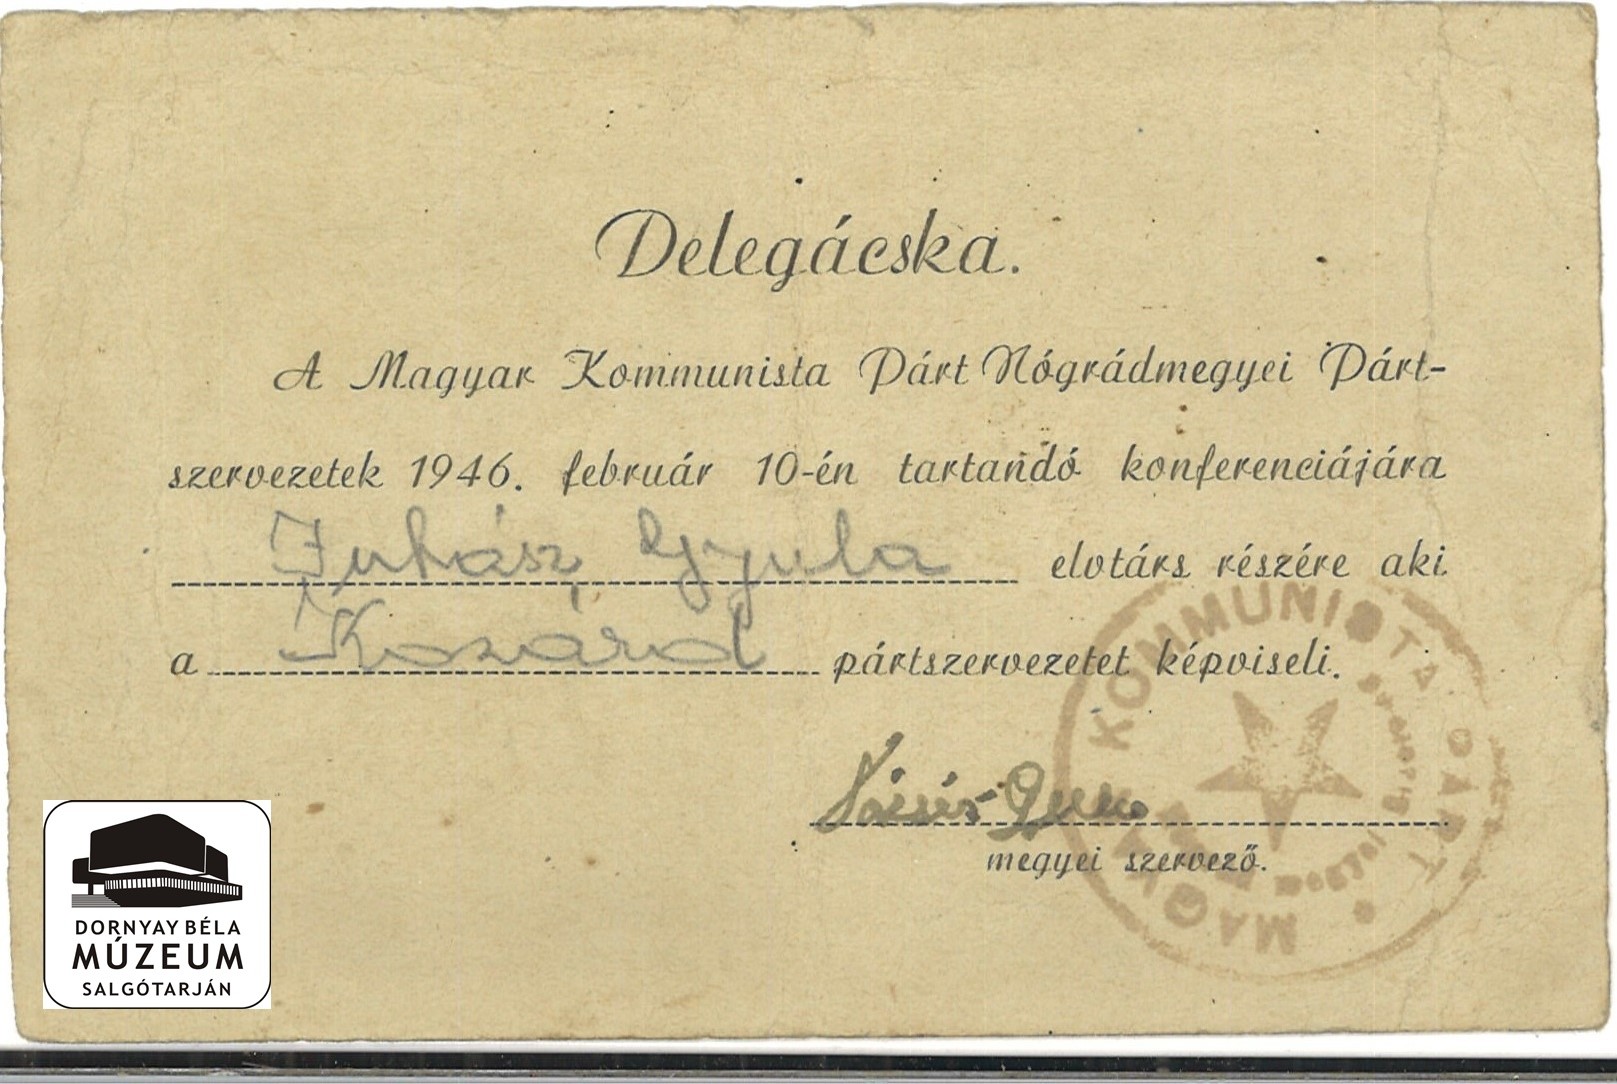 Juhász Gyula személyi iratai (Dornyay Béla Múzeum, Salgótarján CC BY-NC-SA)